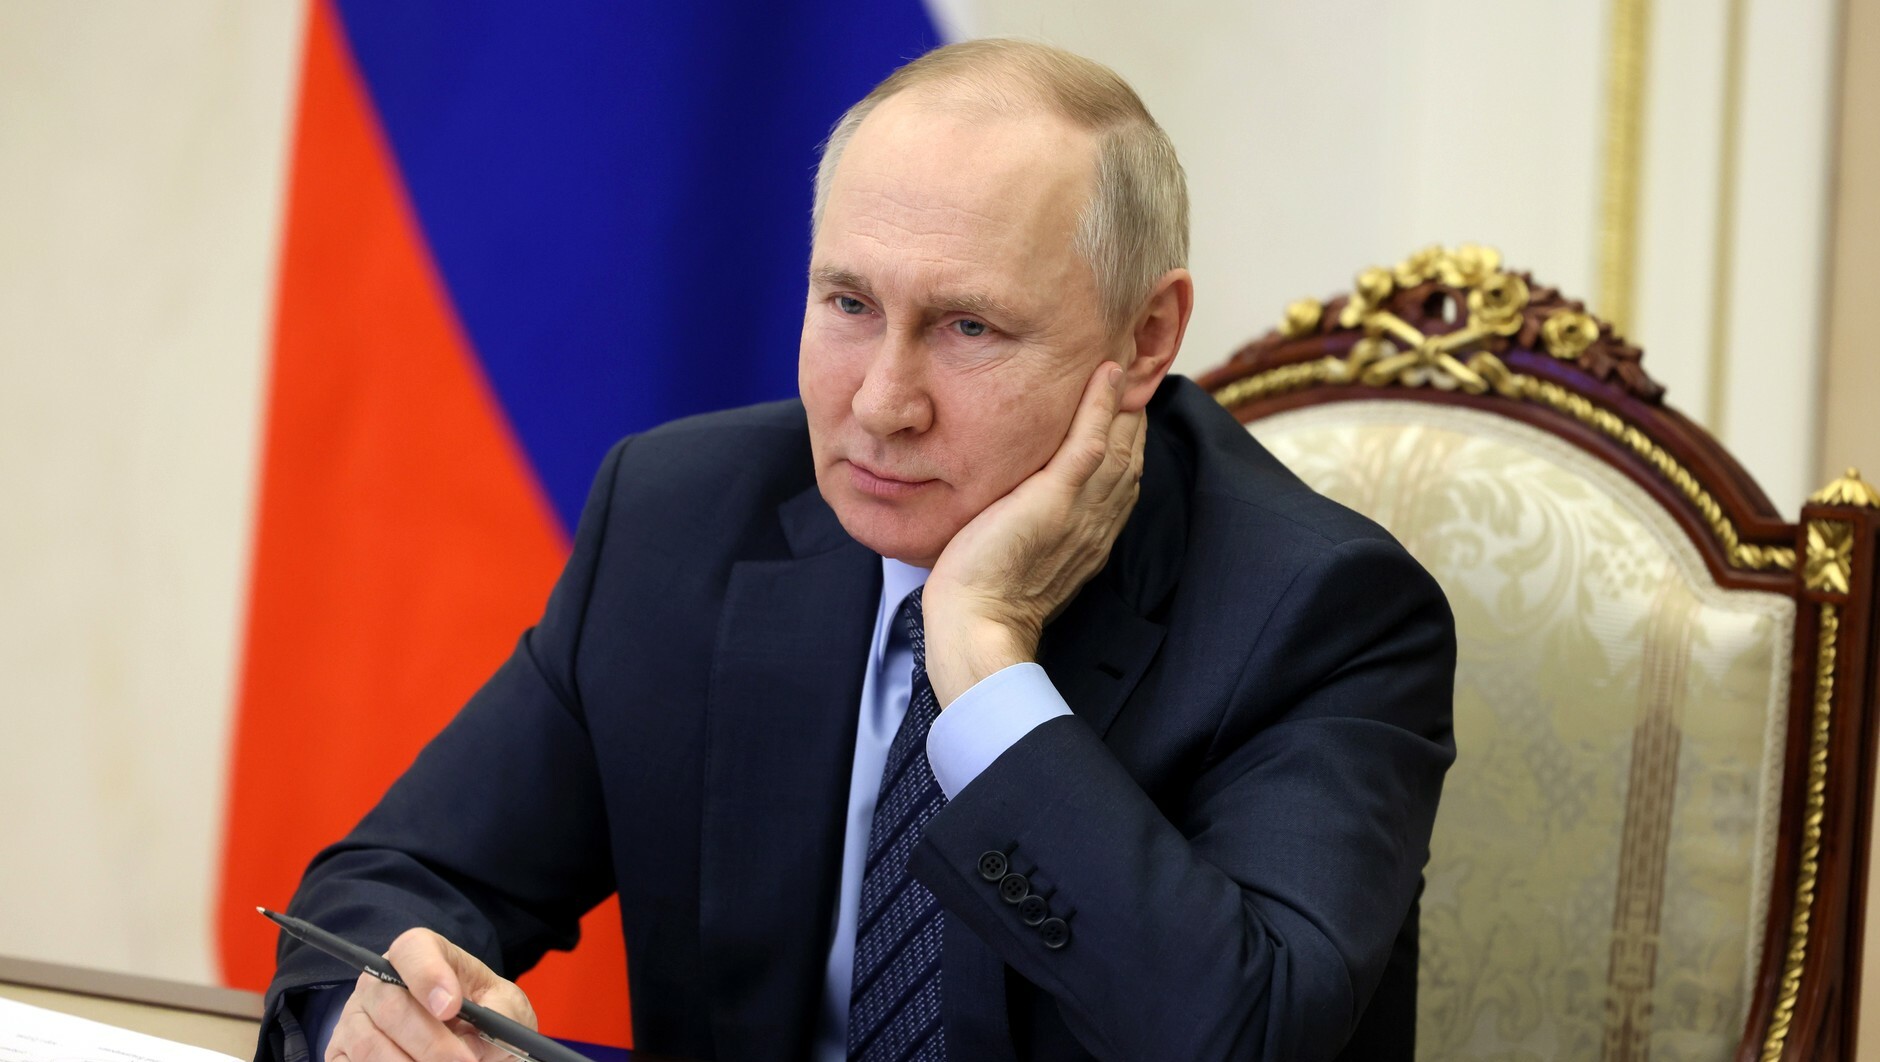 Путин: Хотелось бы быть студентом и поехать на БАМ